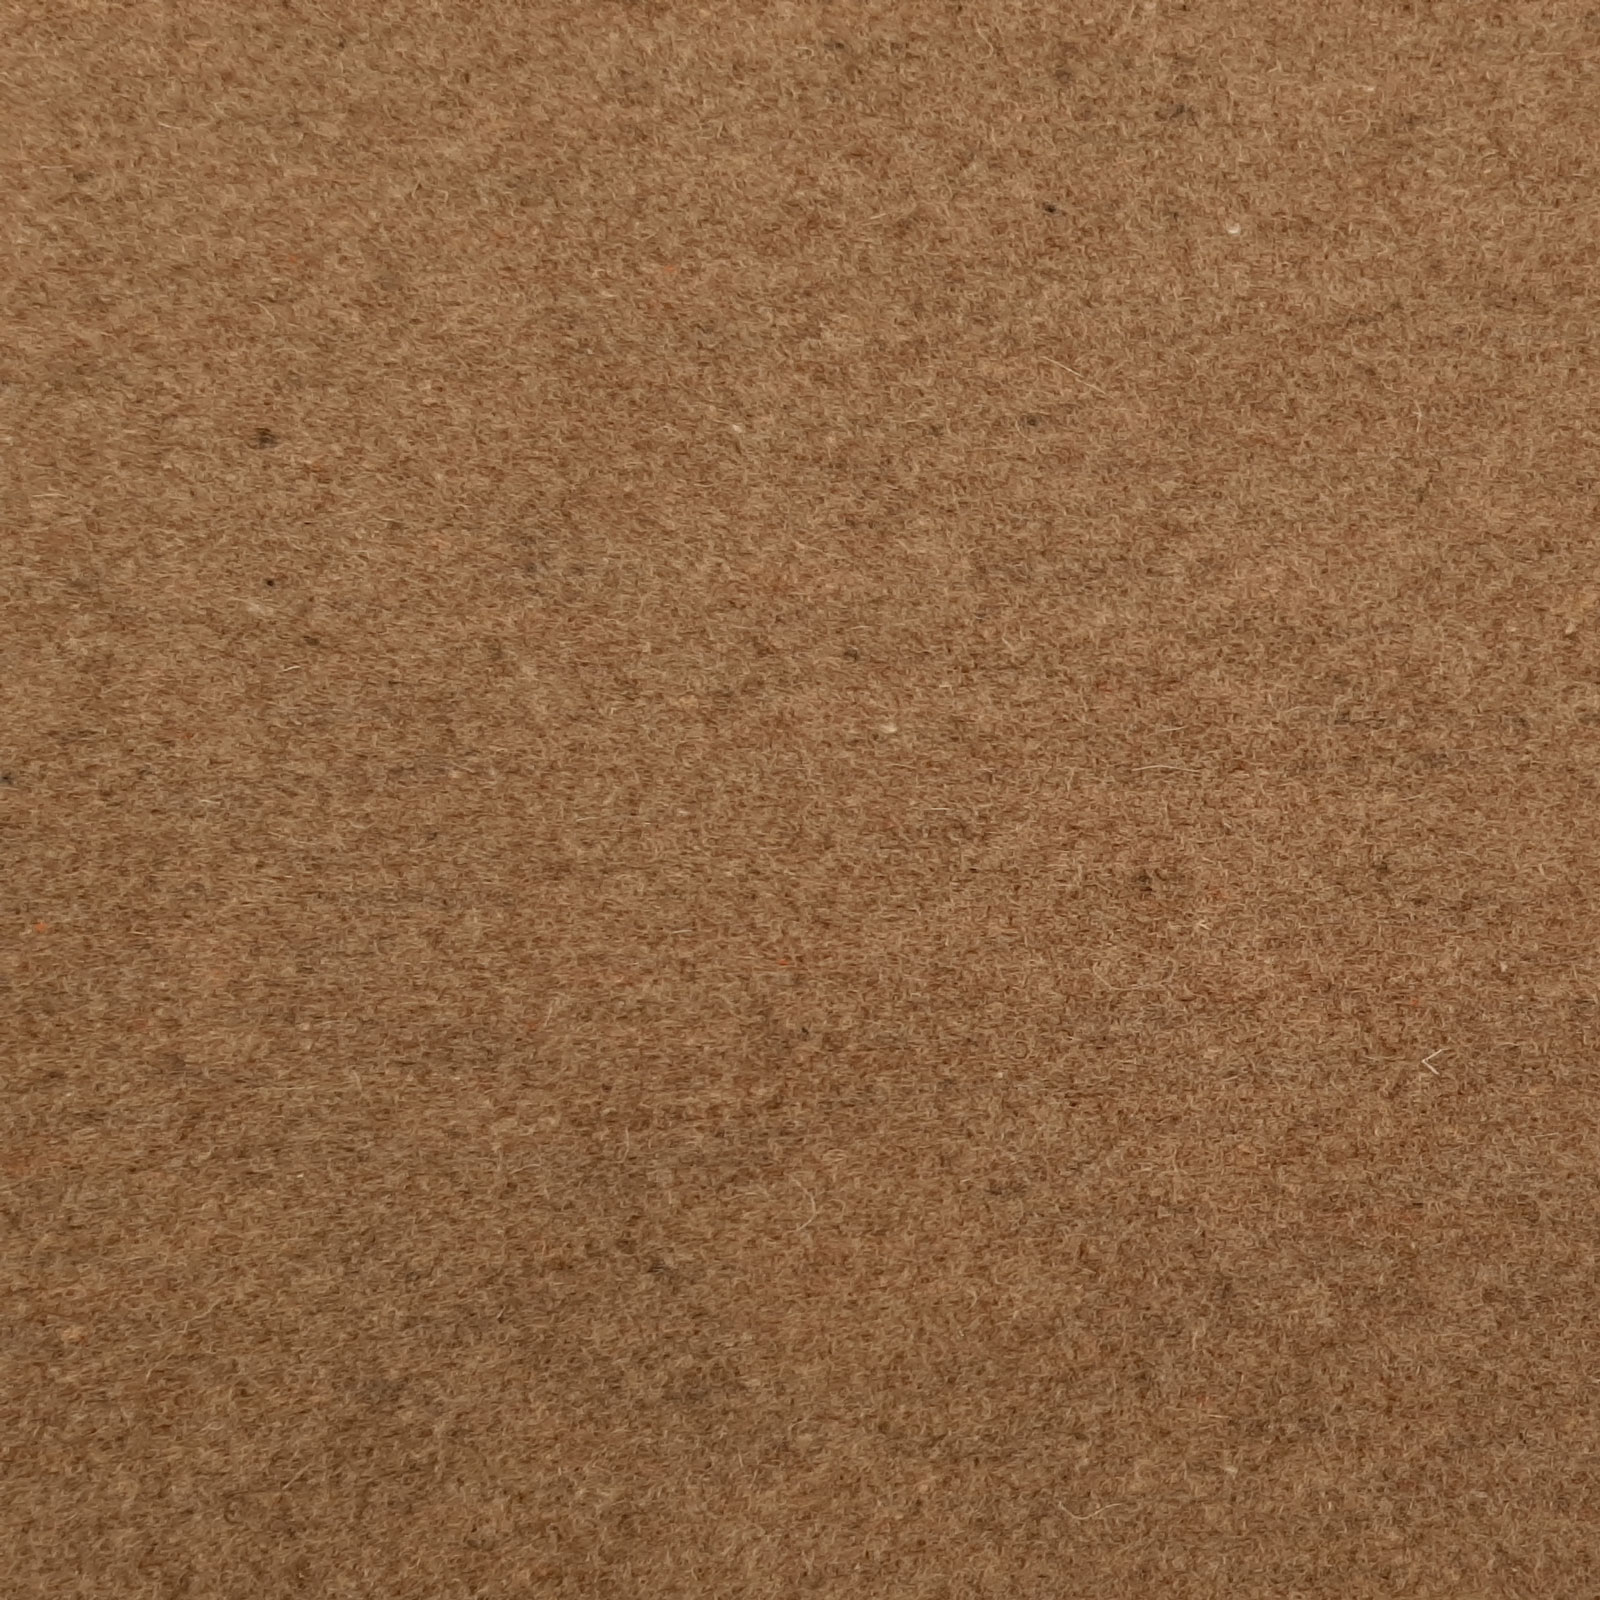 GABY - Gardin- och dekorationstyg av ull, ullvelour - Ljusbrun